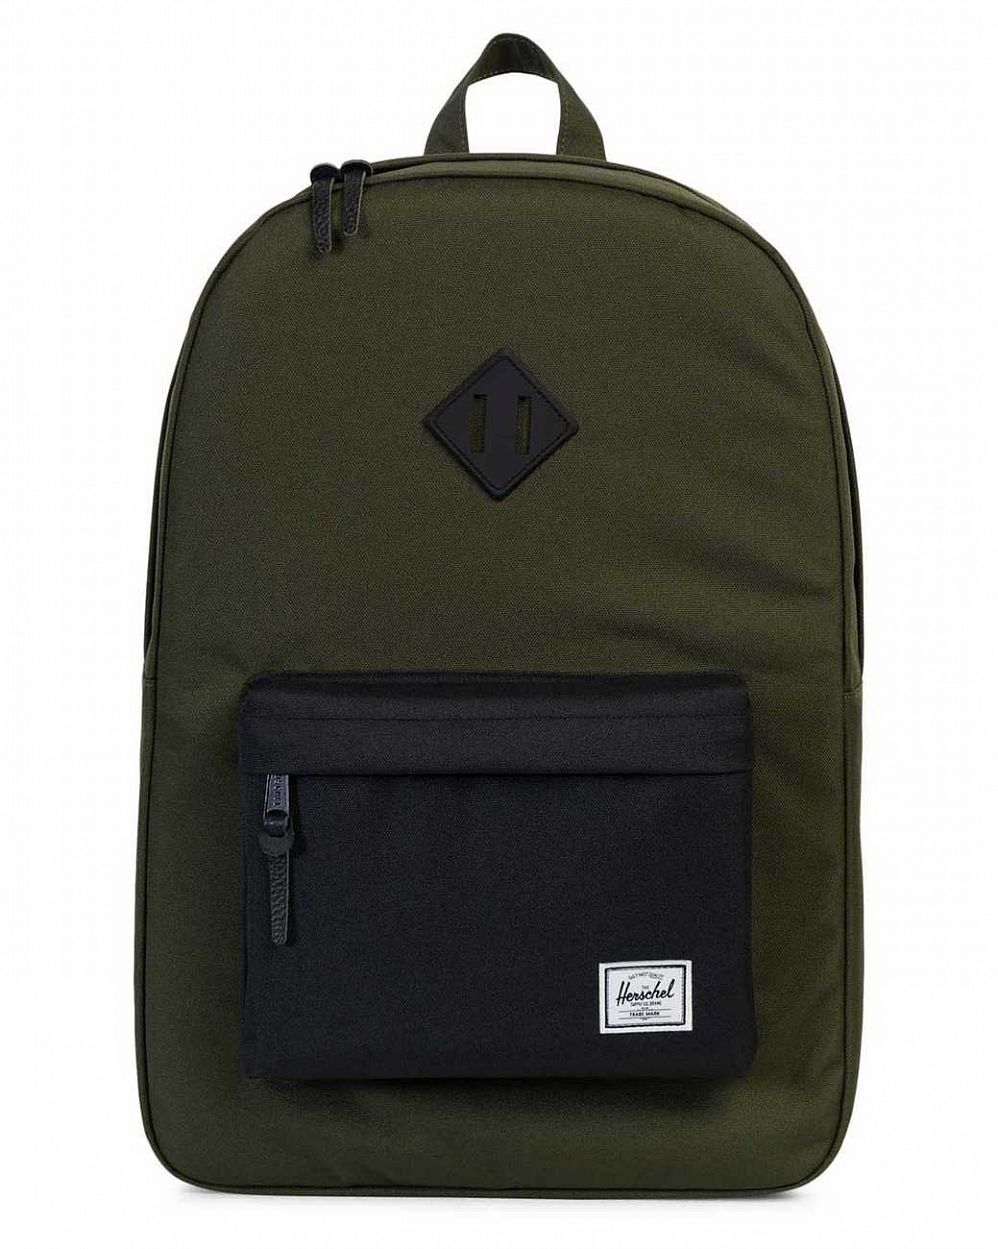 Рюкзак водоотталкивающий с карманом для 15 ноутбука Herschel Heritage Forest Black отзывы